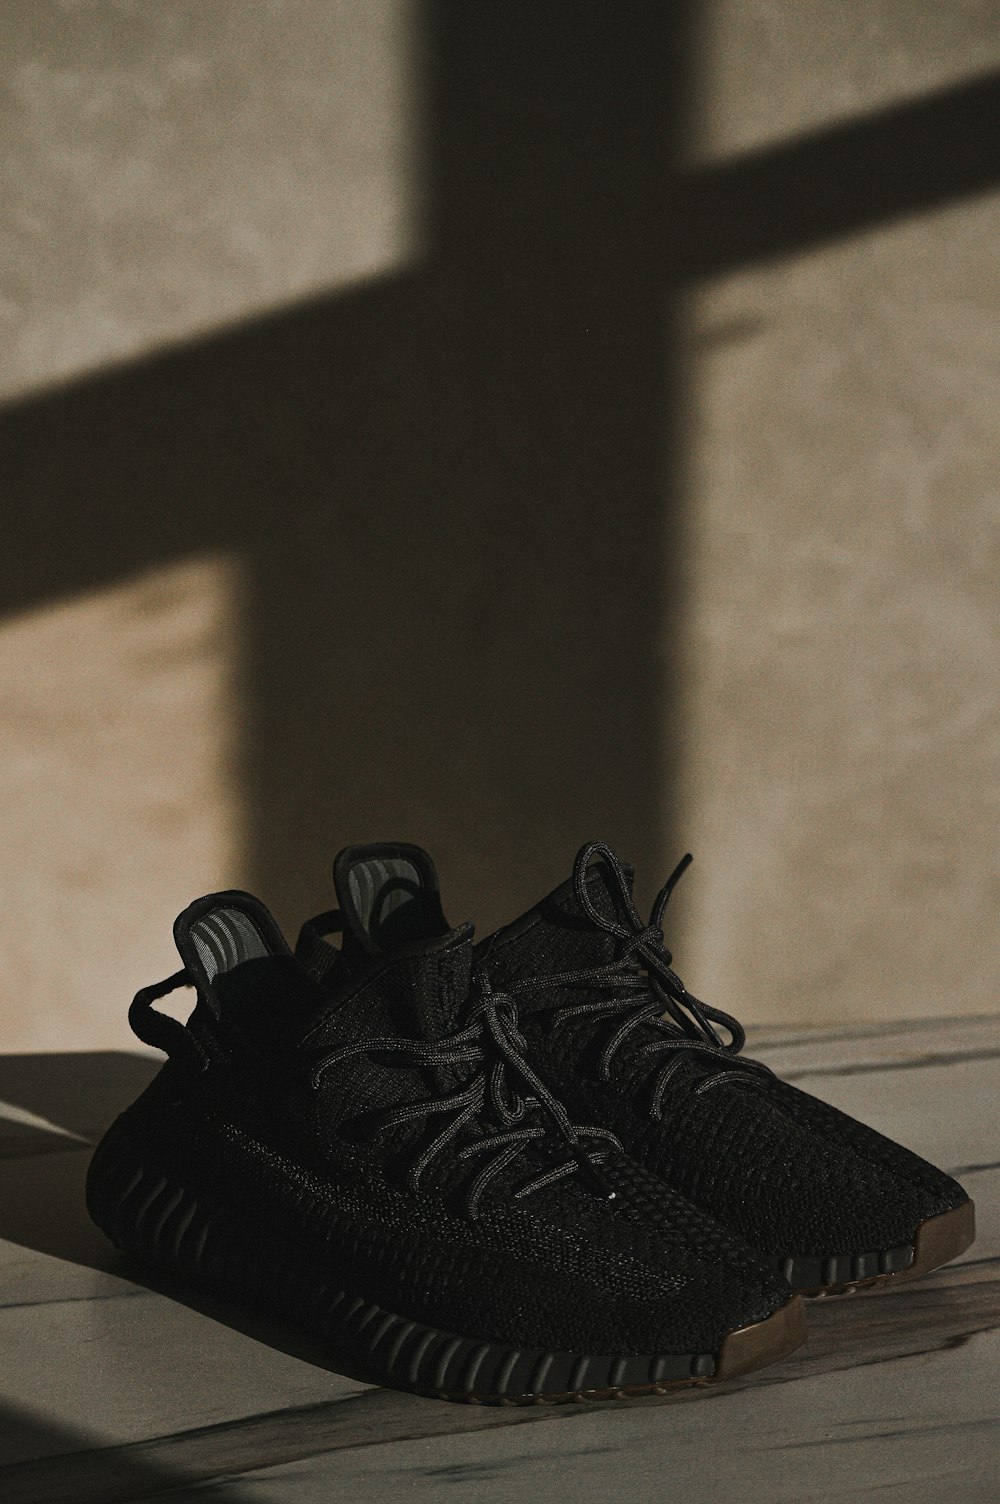 une paire de chaussures noires posées sur un plancher en bois